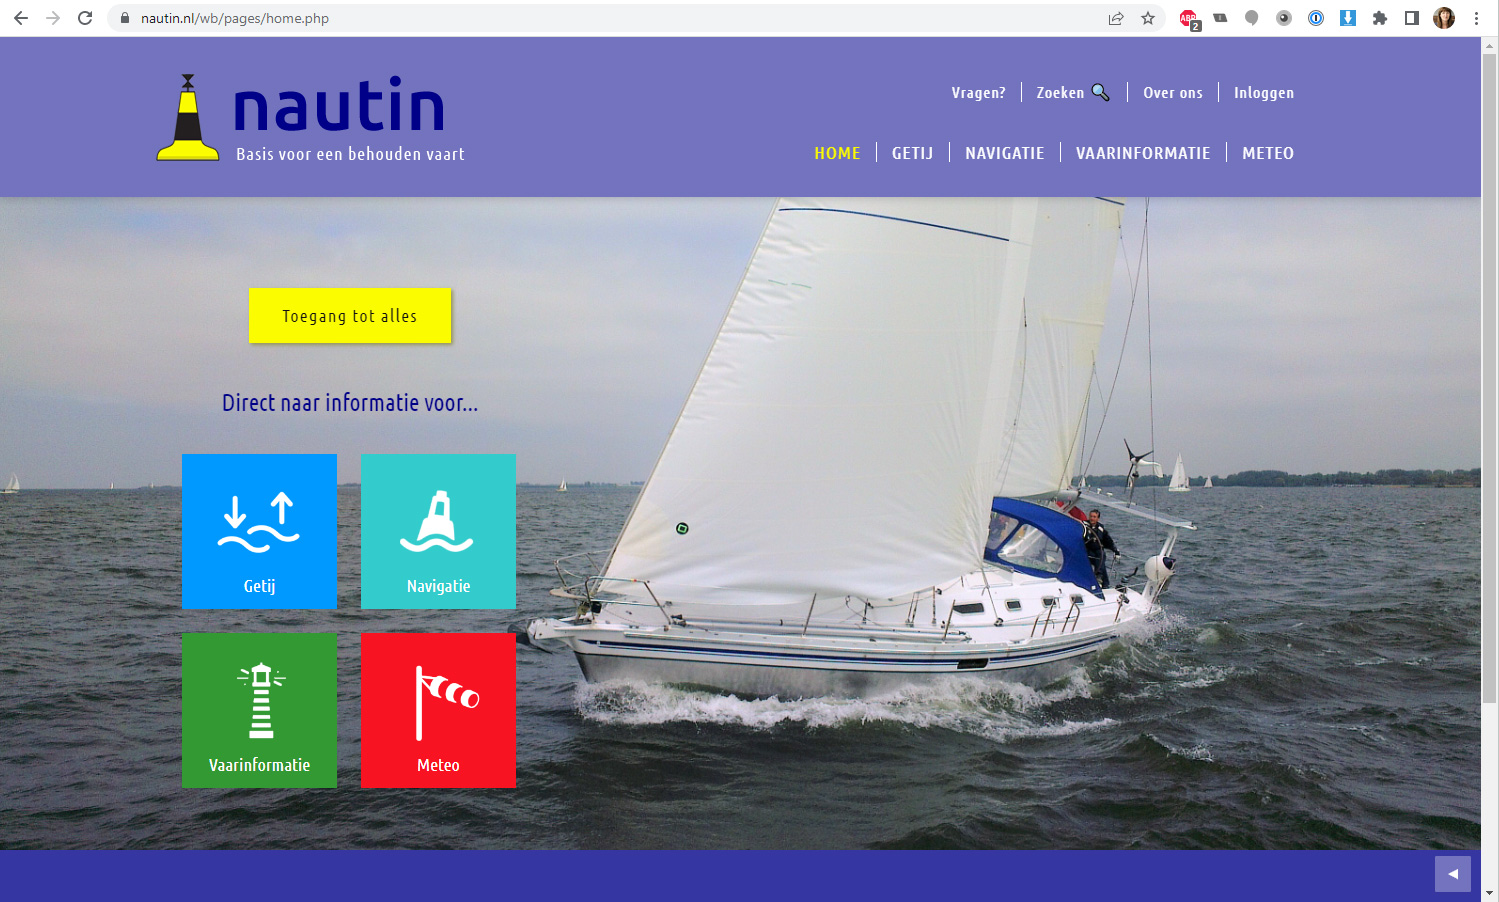 nautin homepage